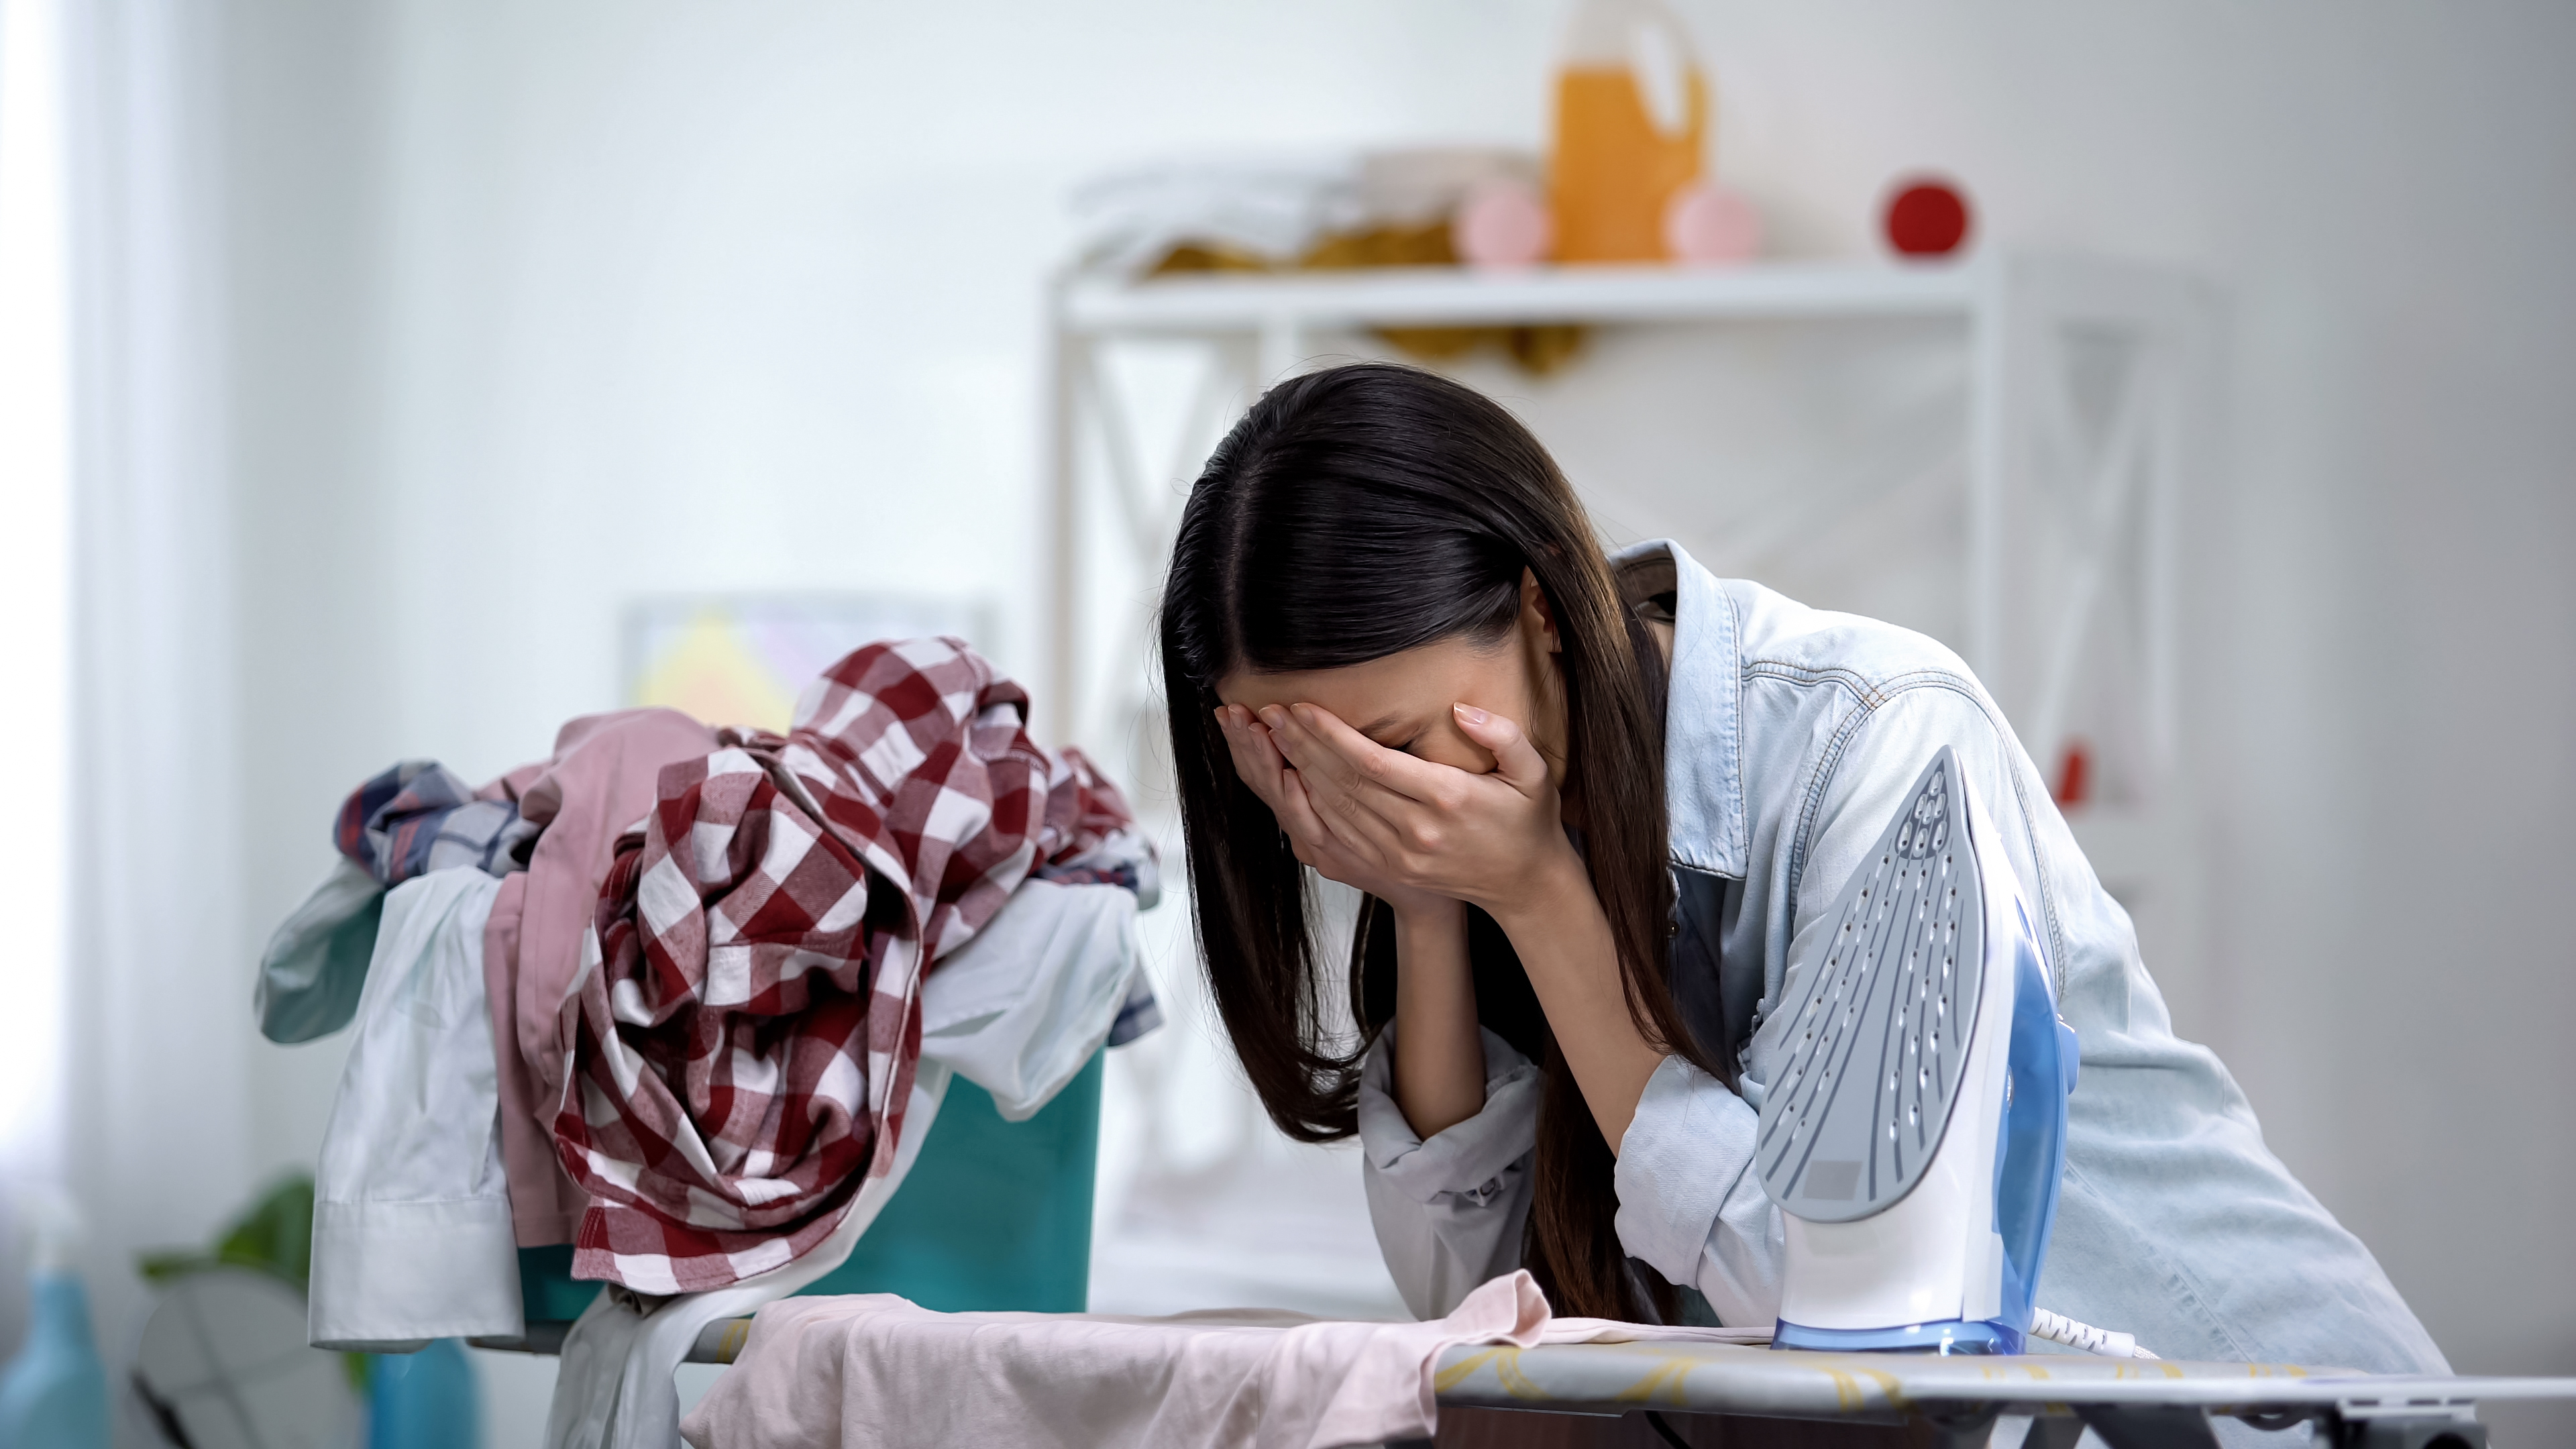 Una mujer sufre un colapso emocional mientras se apoya en una tabla de planchar. | Foto: Shutterstock